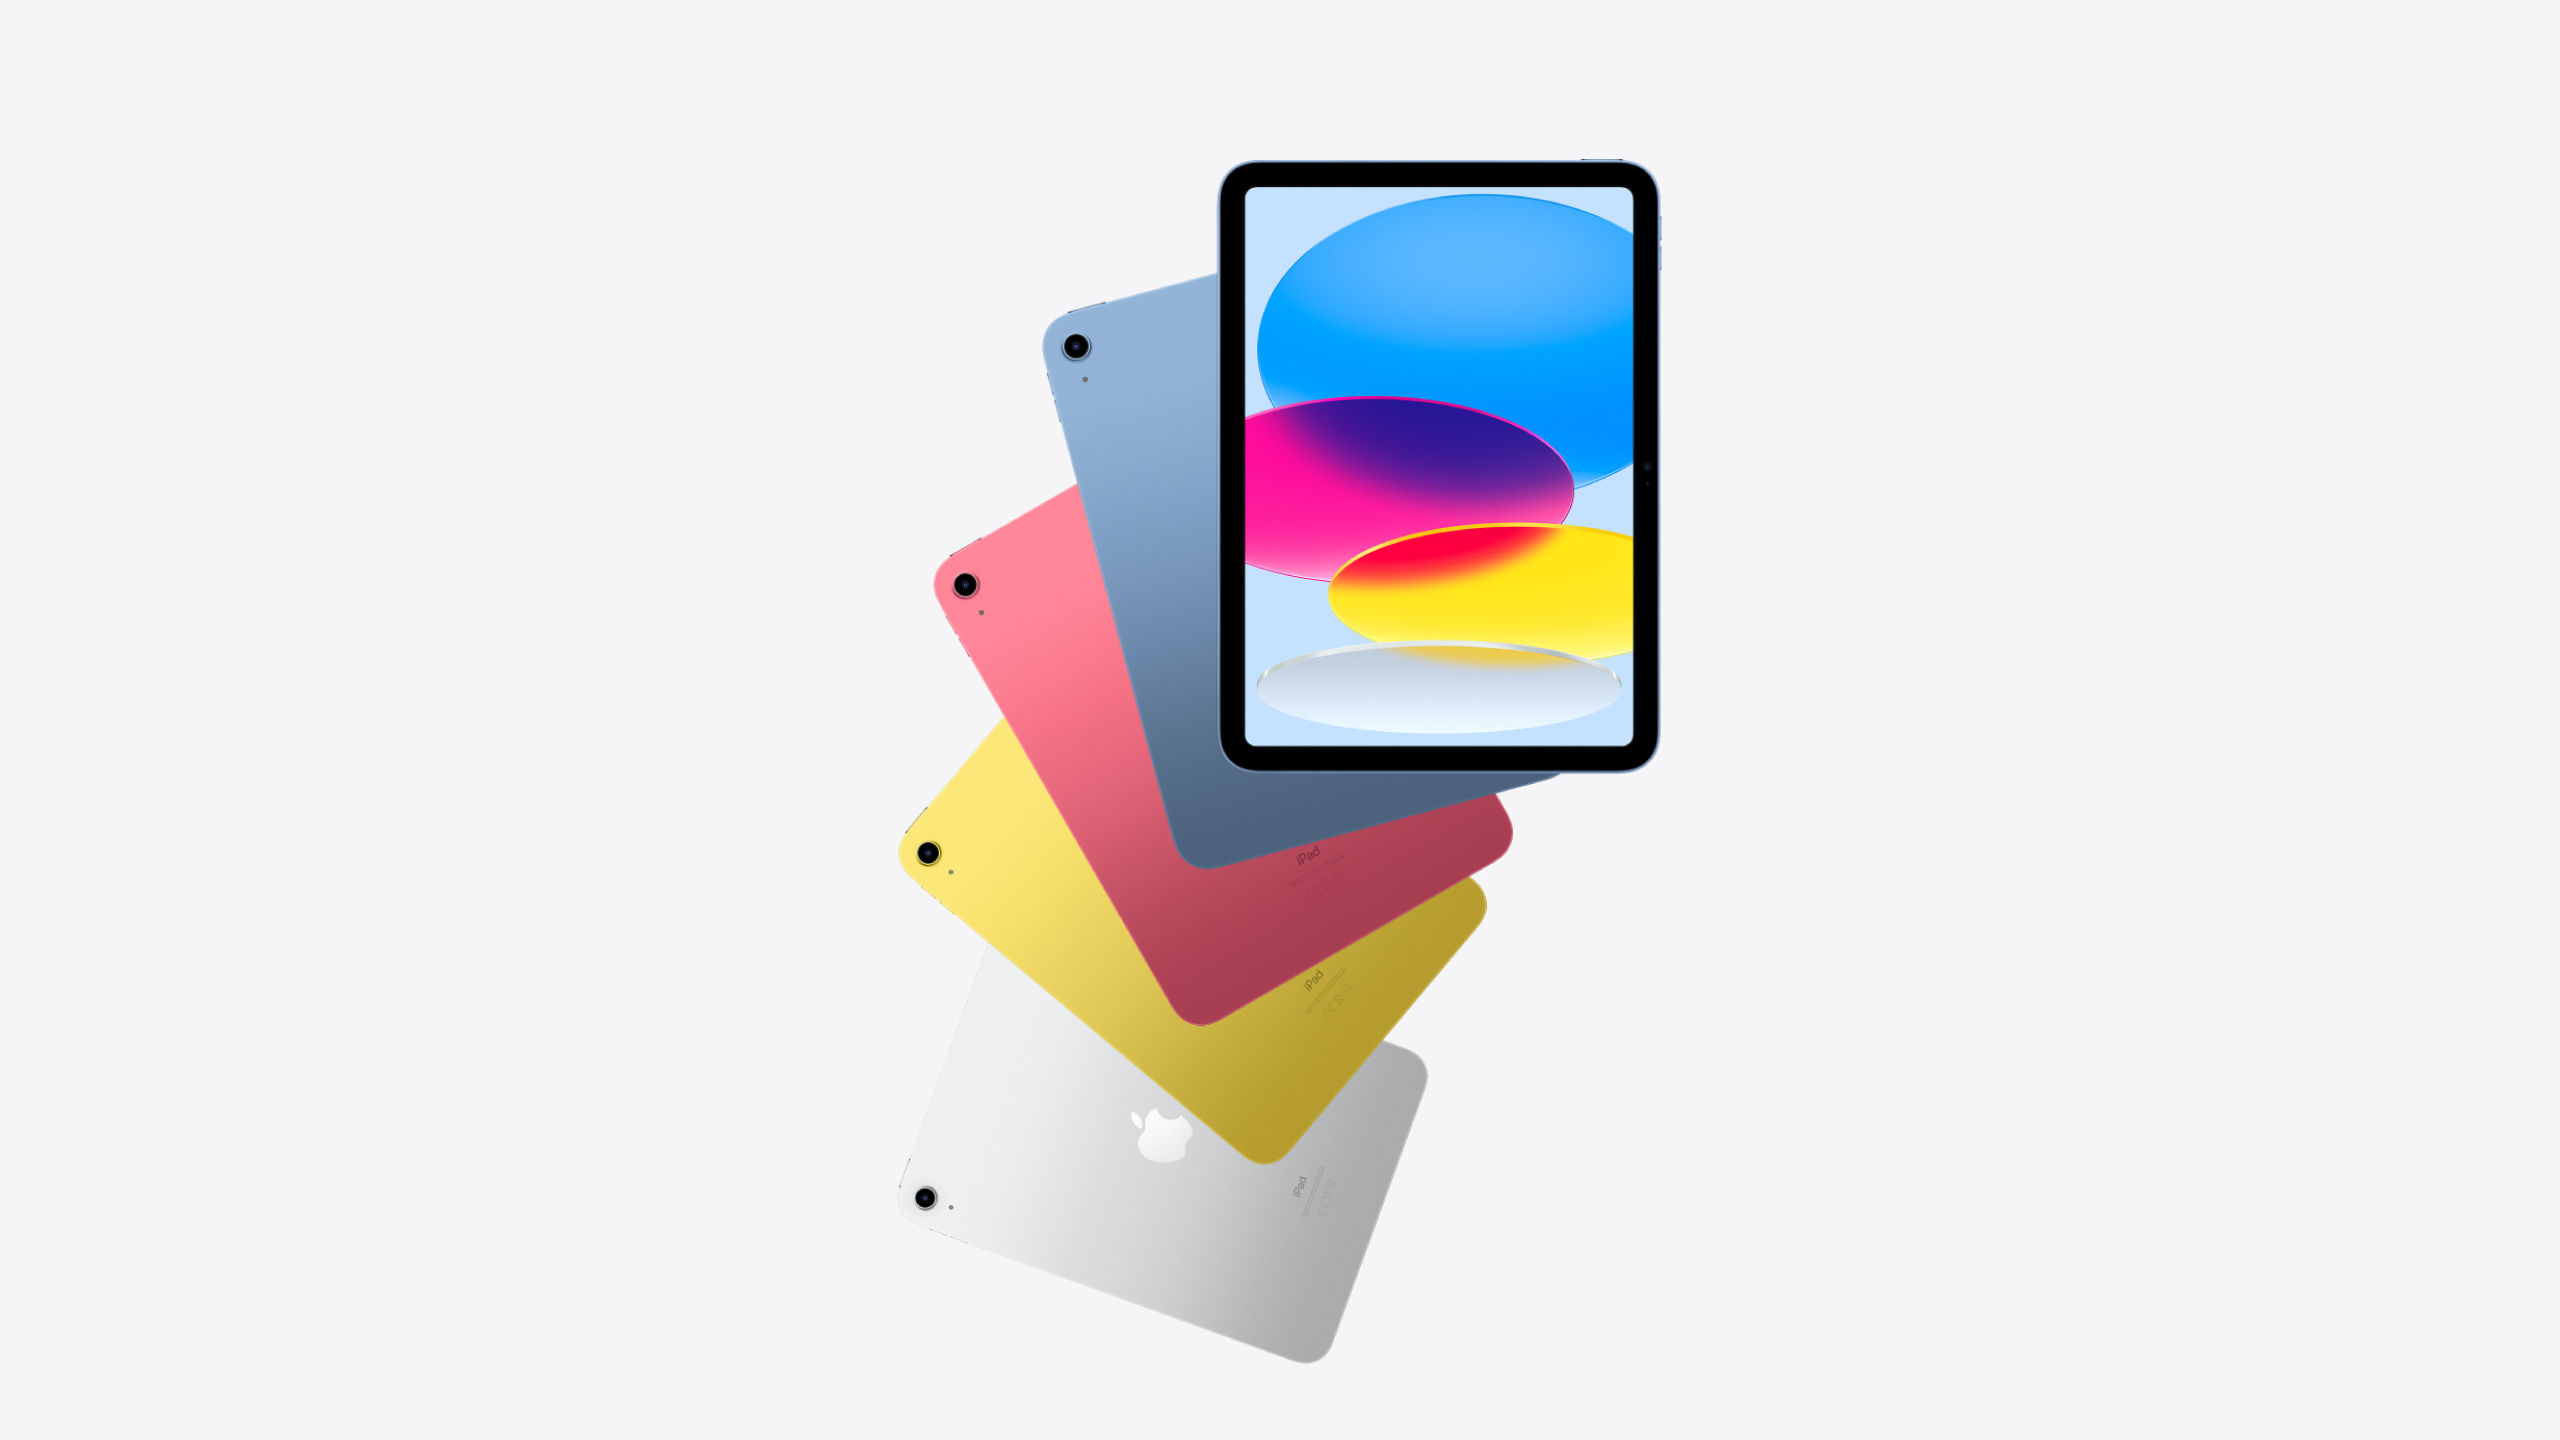 Apple 10.9 iPad (10th Gen.) Wi-Fi 256GB - Pink